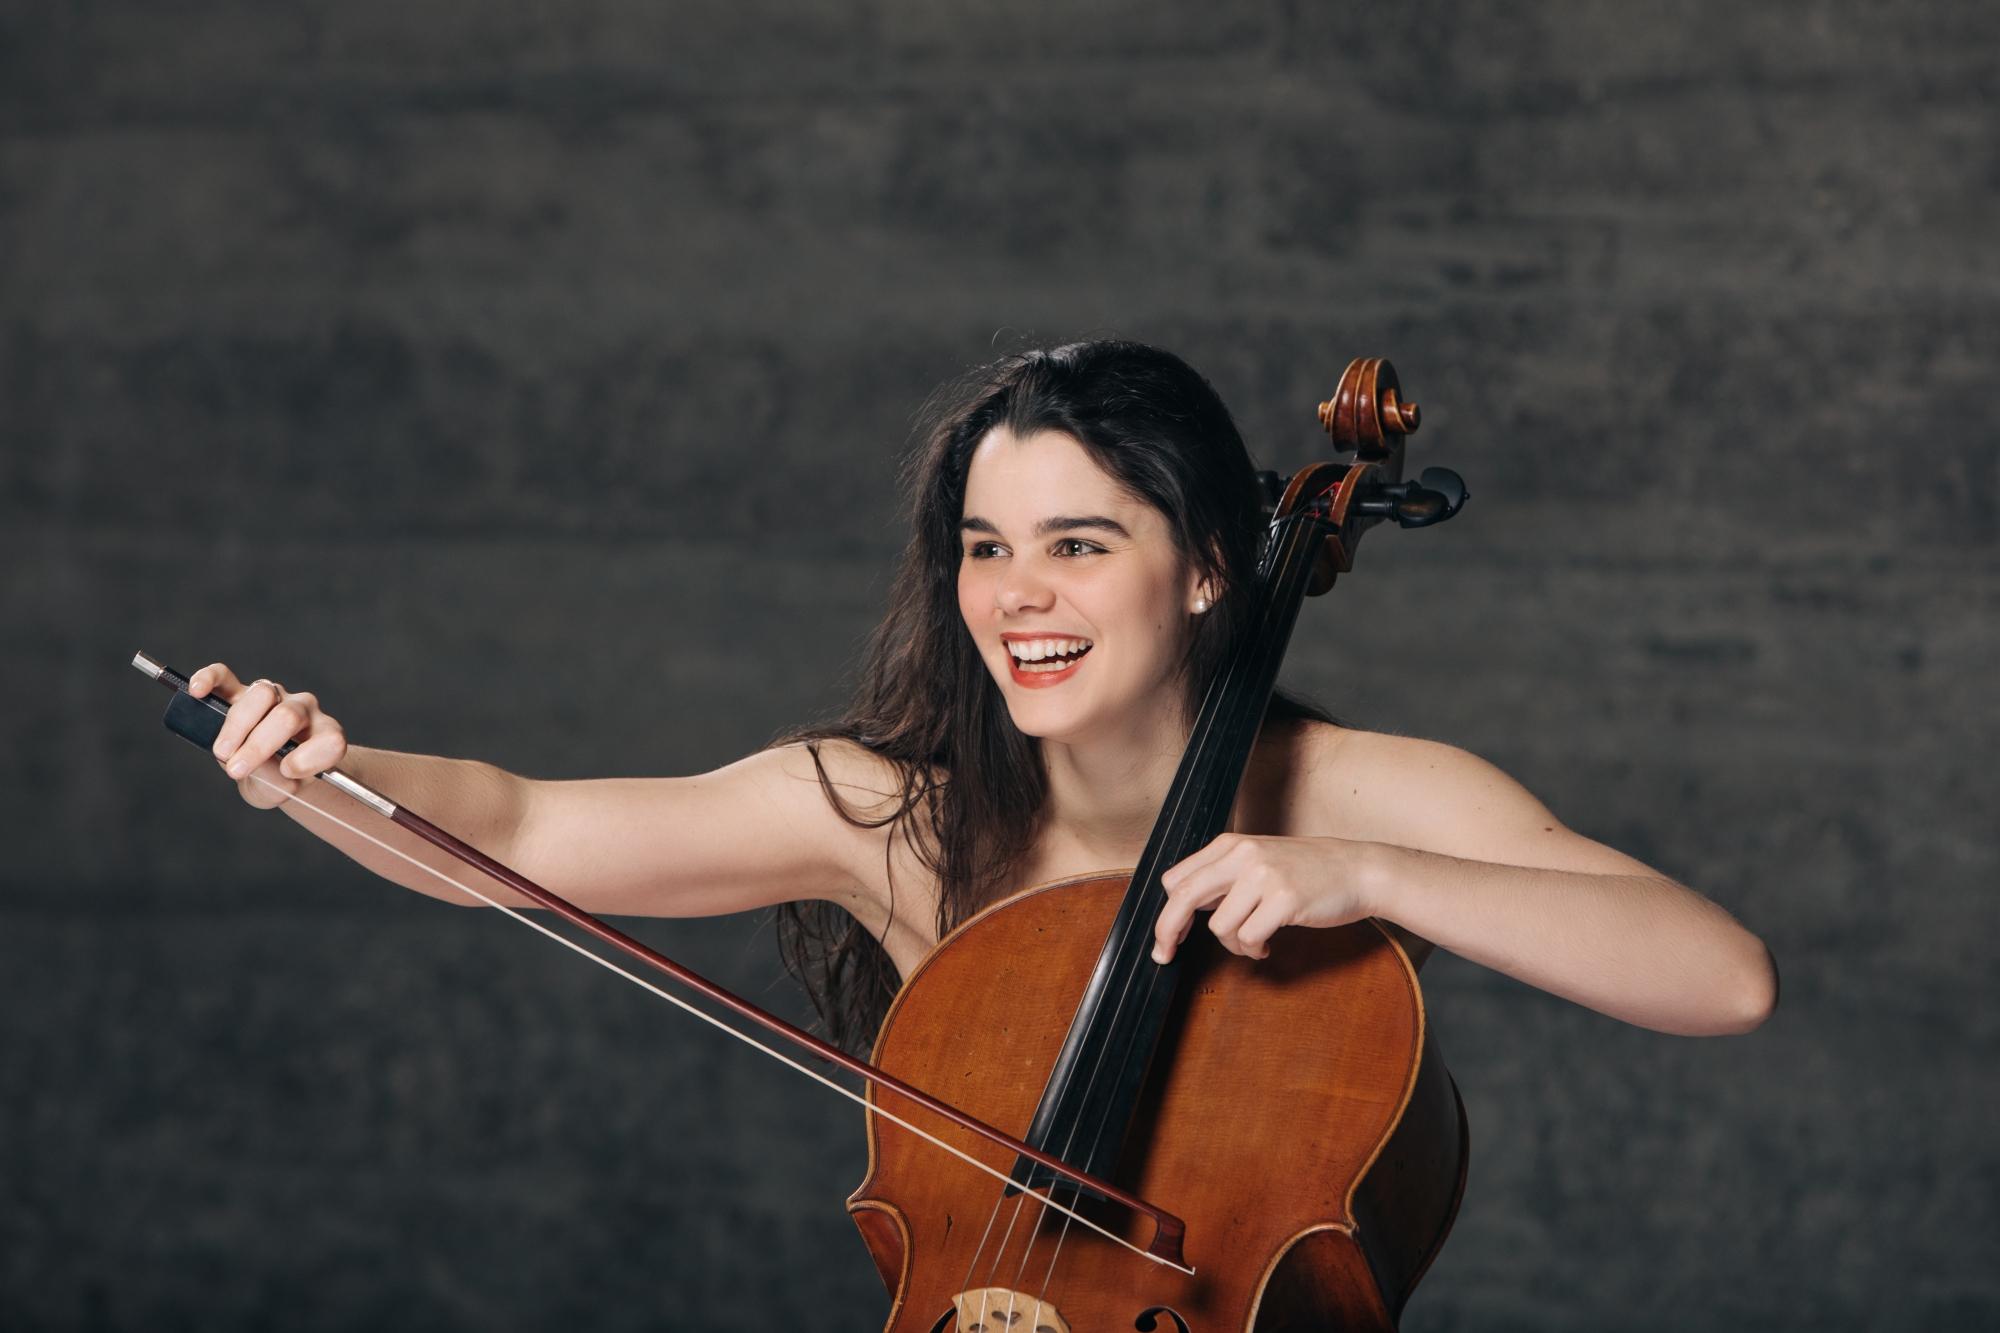 La jeune violoncelliste valaisanne Estelle Revaz interprètera 4 danses norvégiennes d’Edvard Grieg, à 16h.